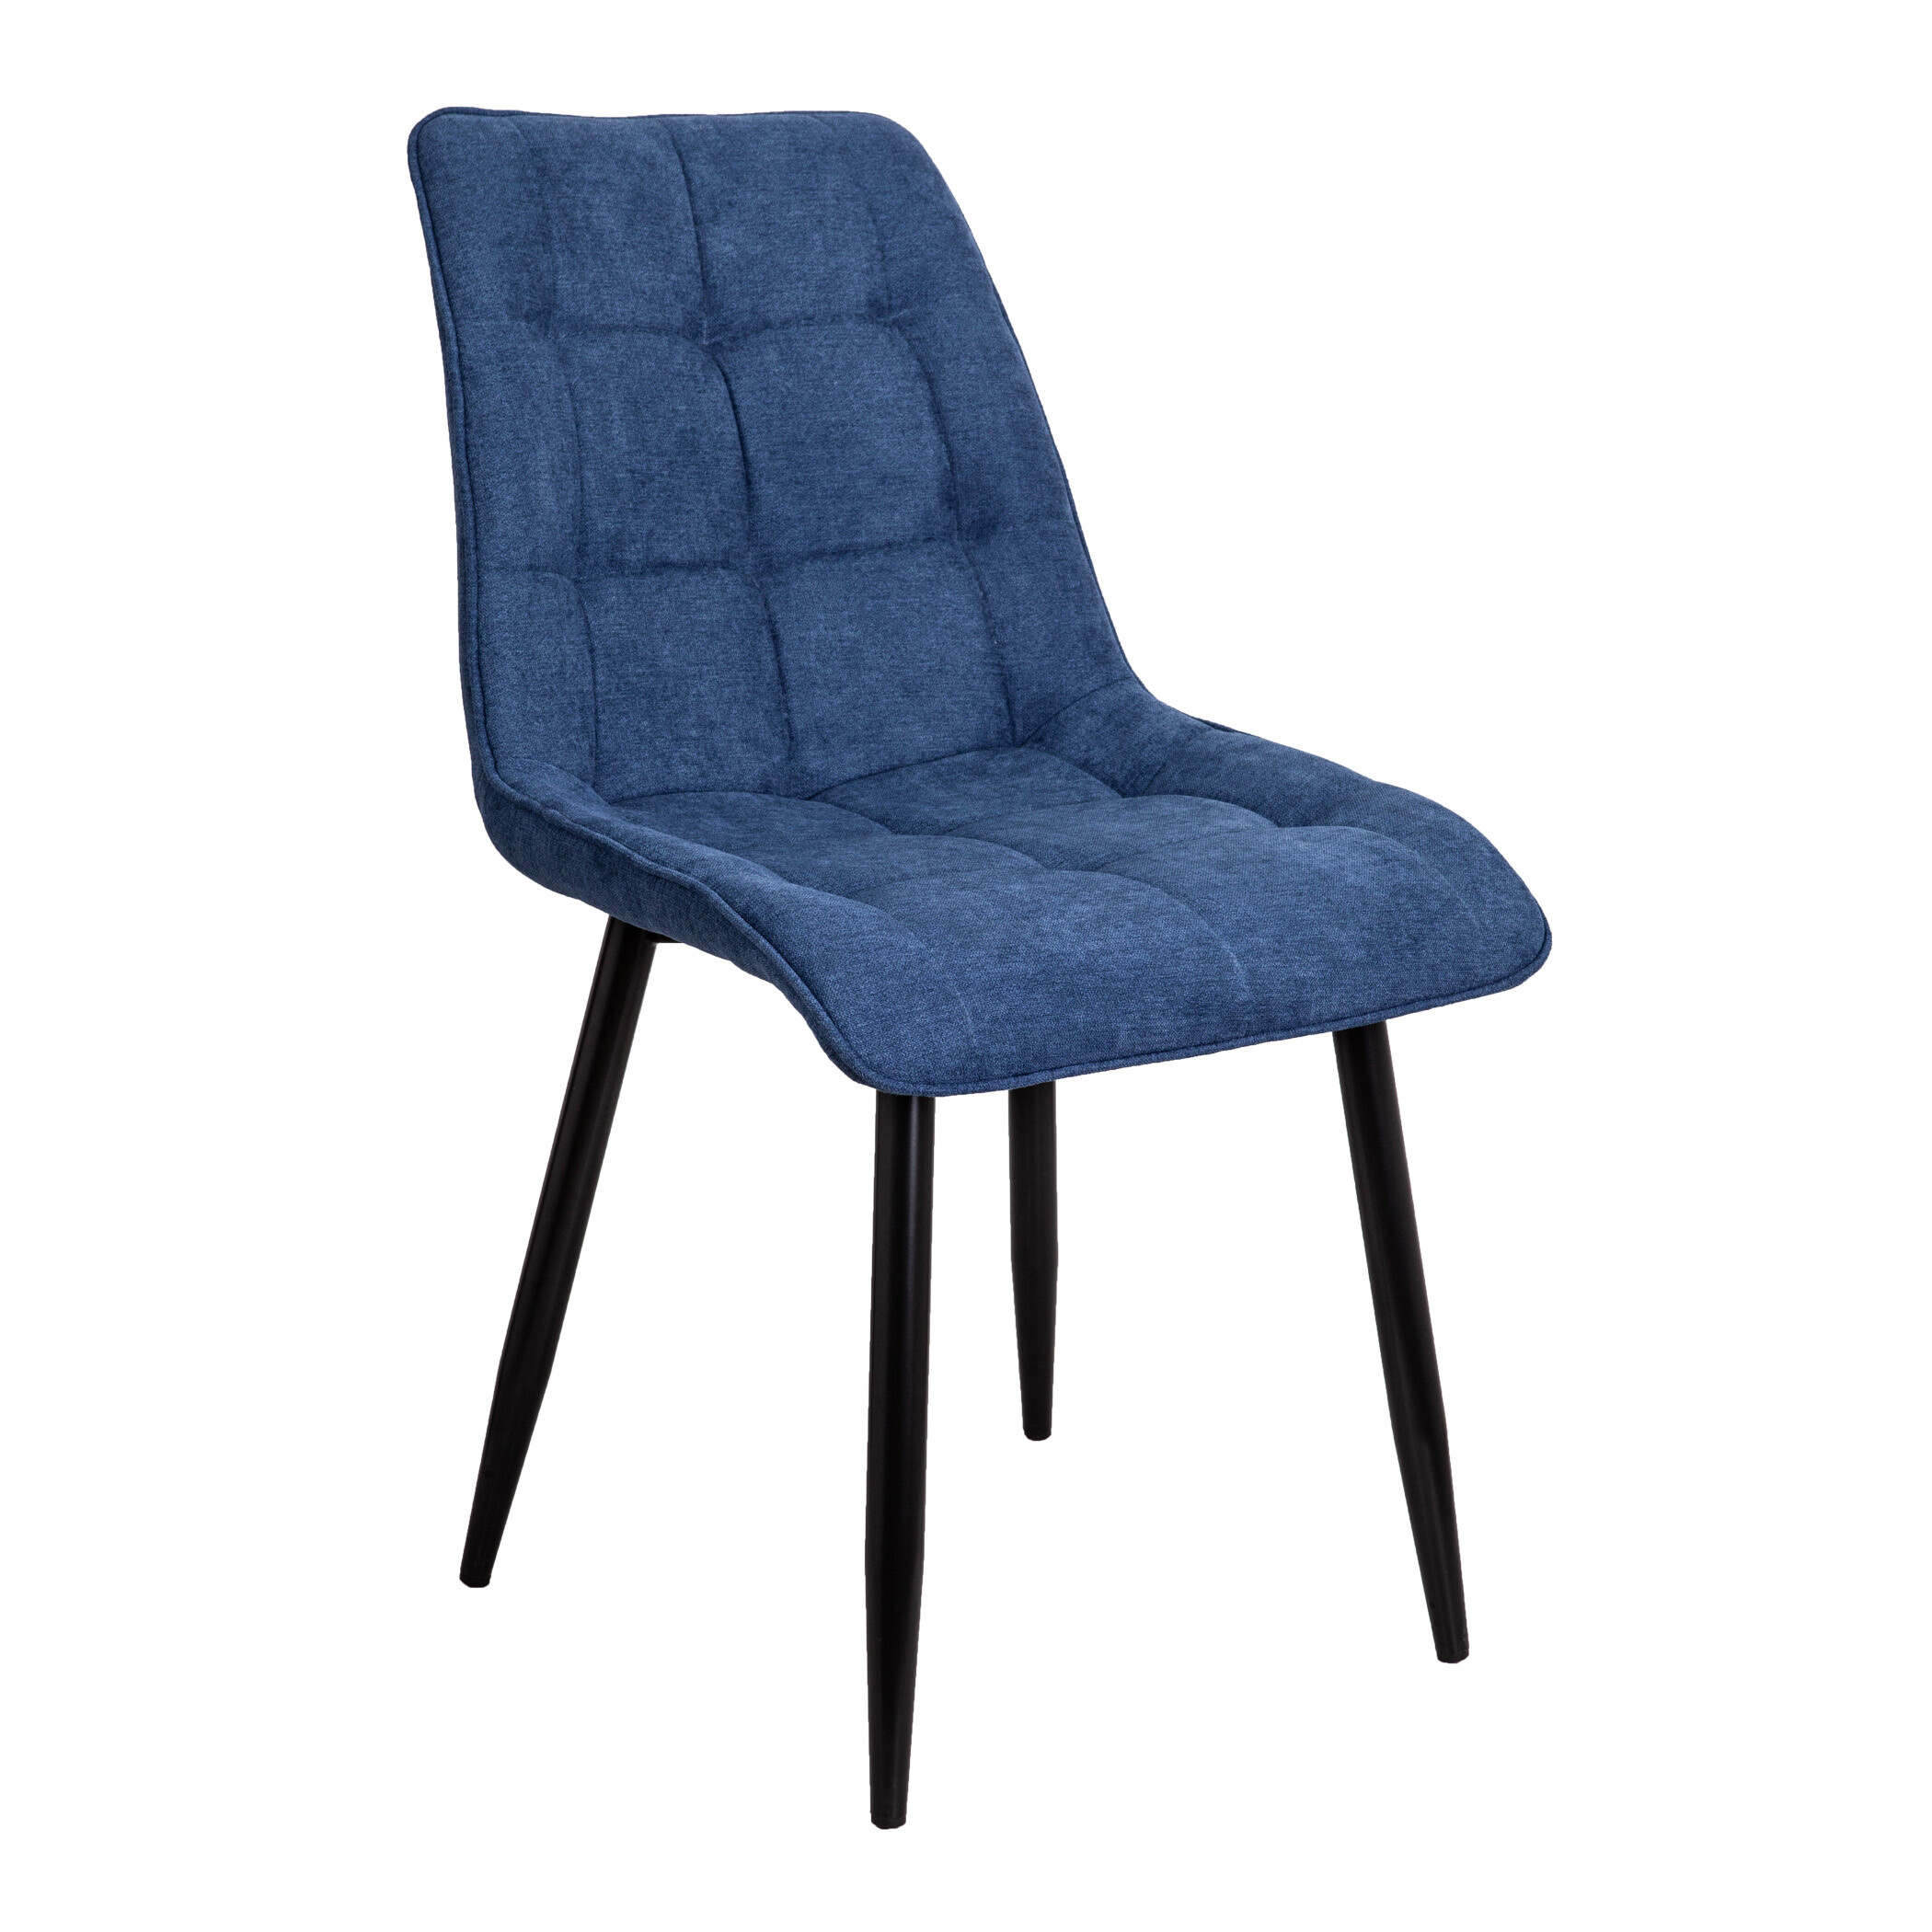 Обеденный стул мягкий синийFRED